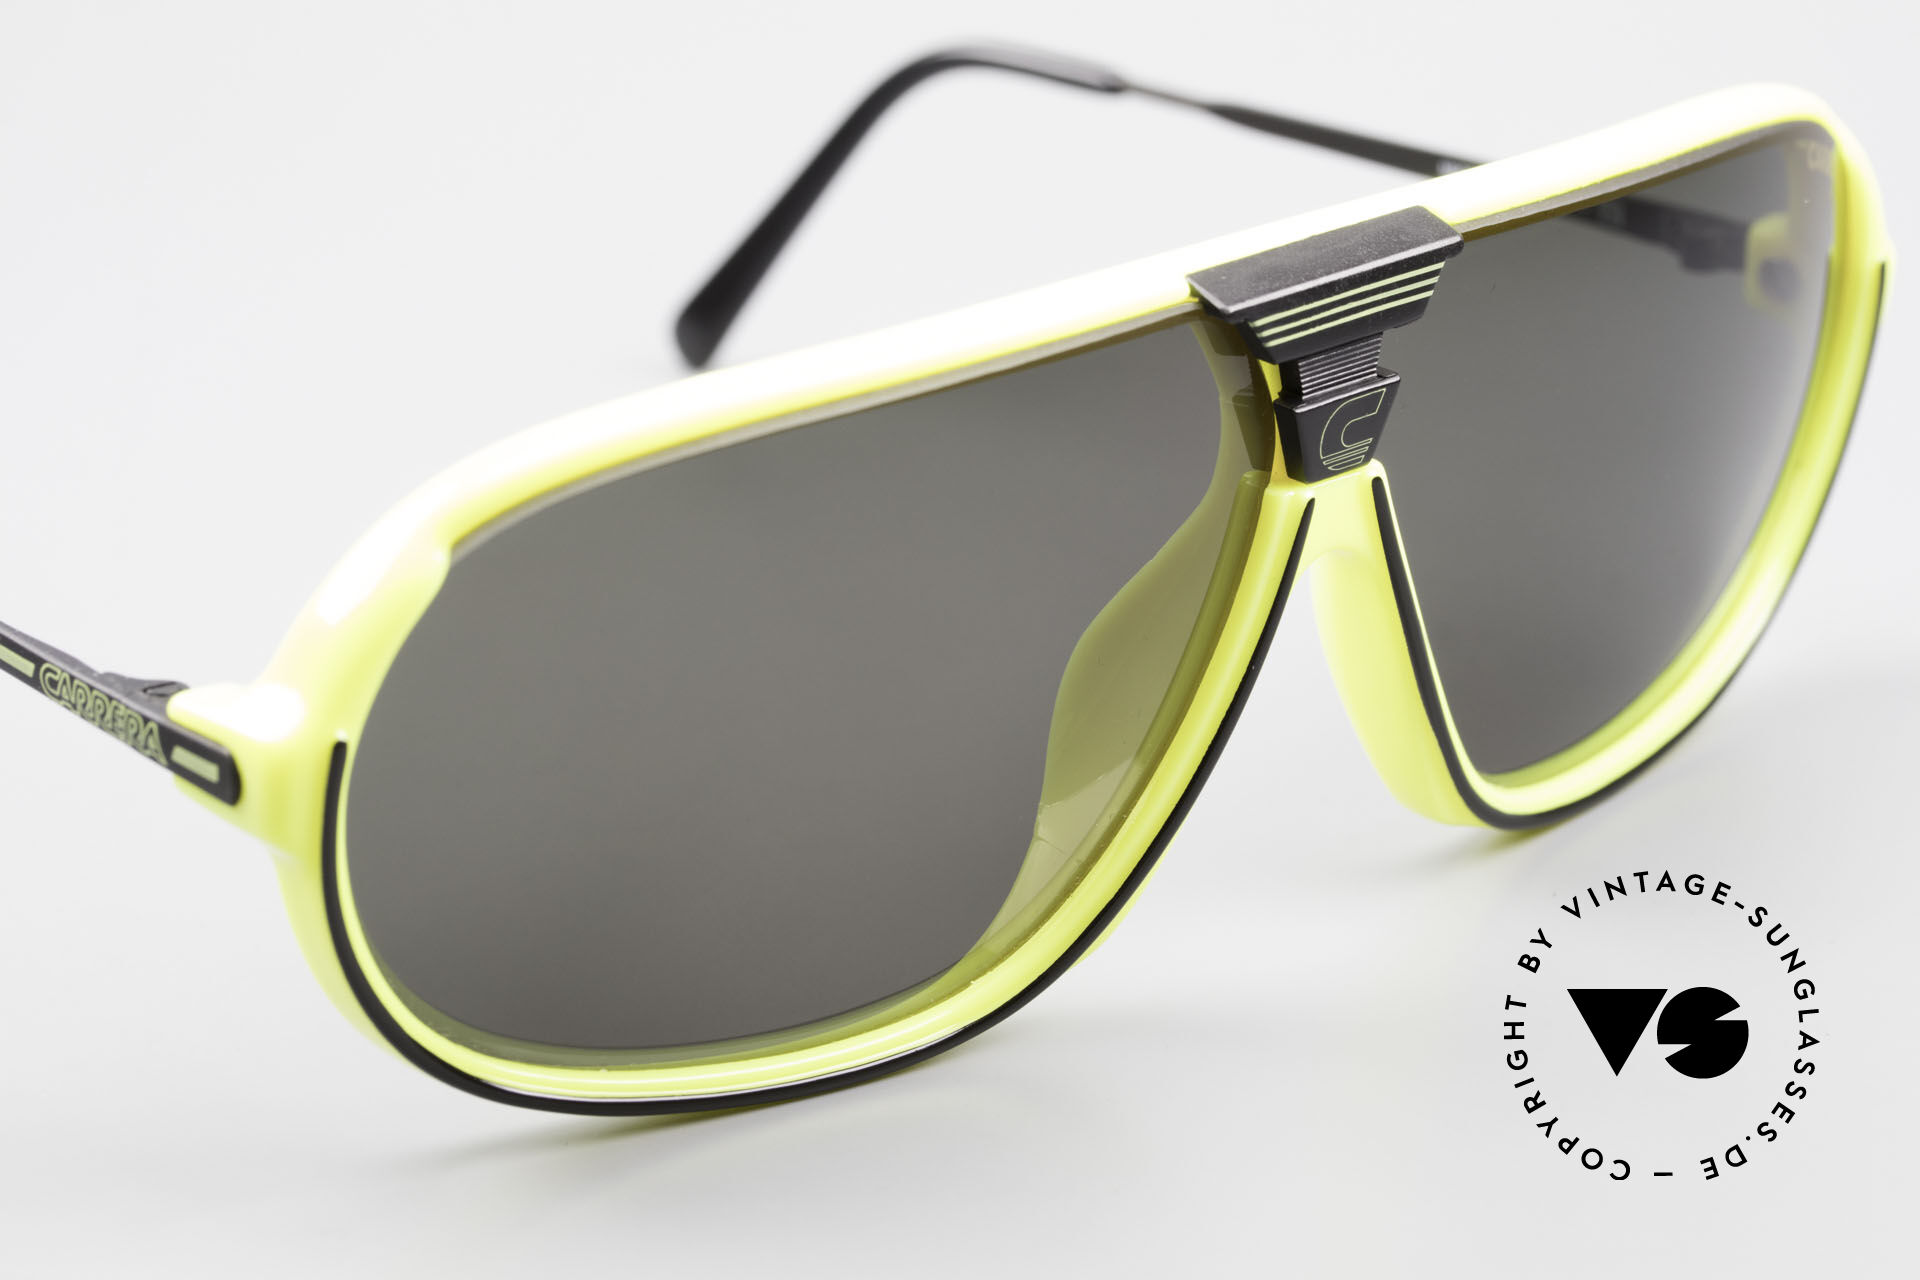 Sunglasses Carrera 5416 80's Shades Polarized Lenses